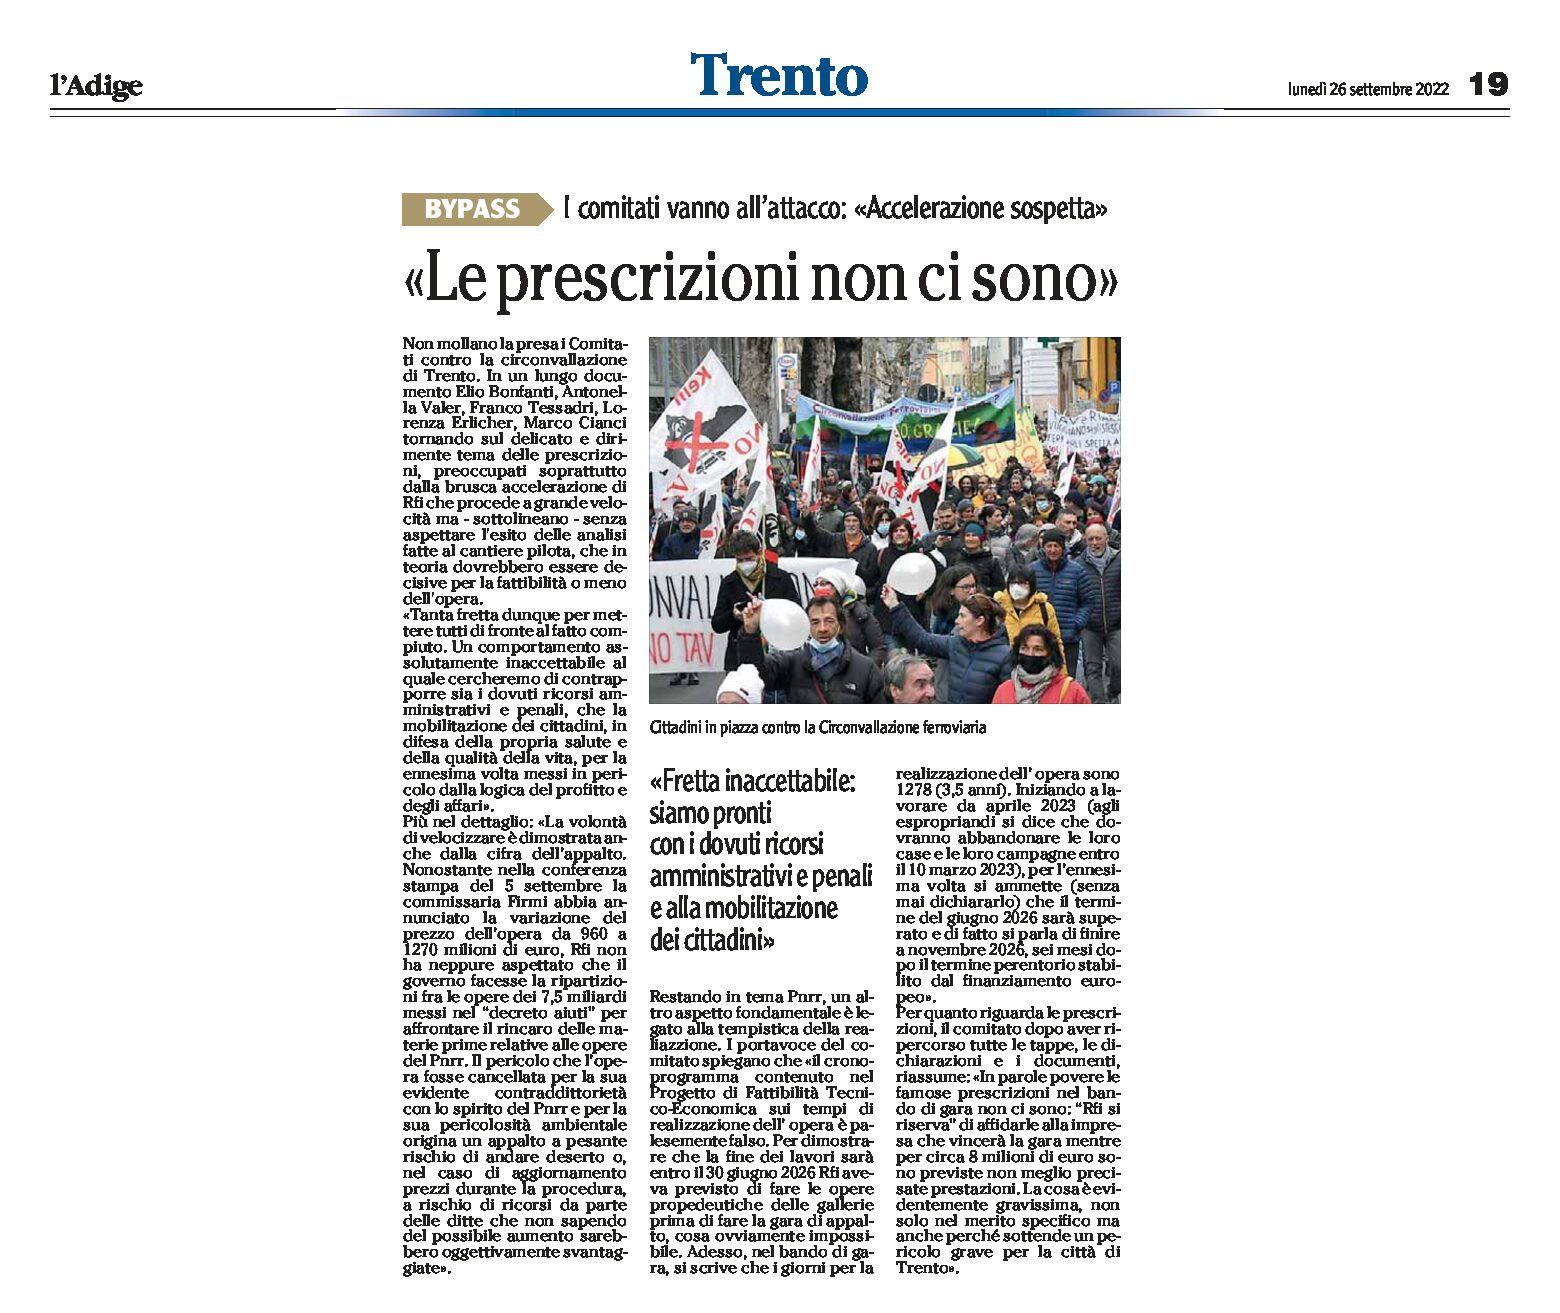 Trento, bypass: i comitati “accelerazione sospetta, le prescrizioni non ci sono”